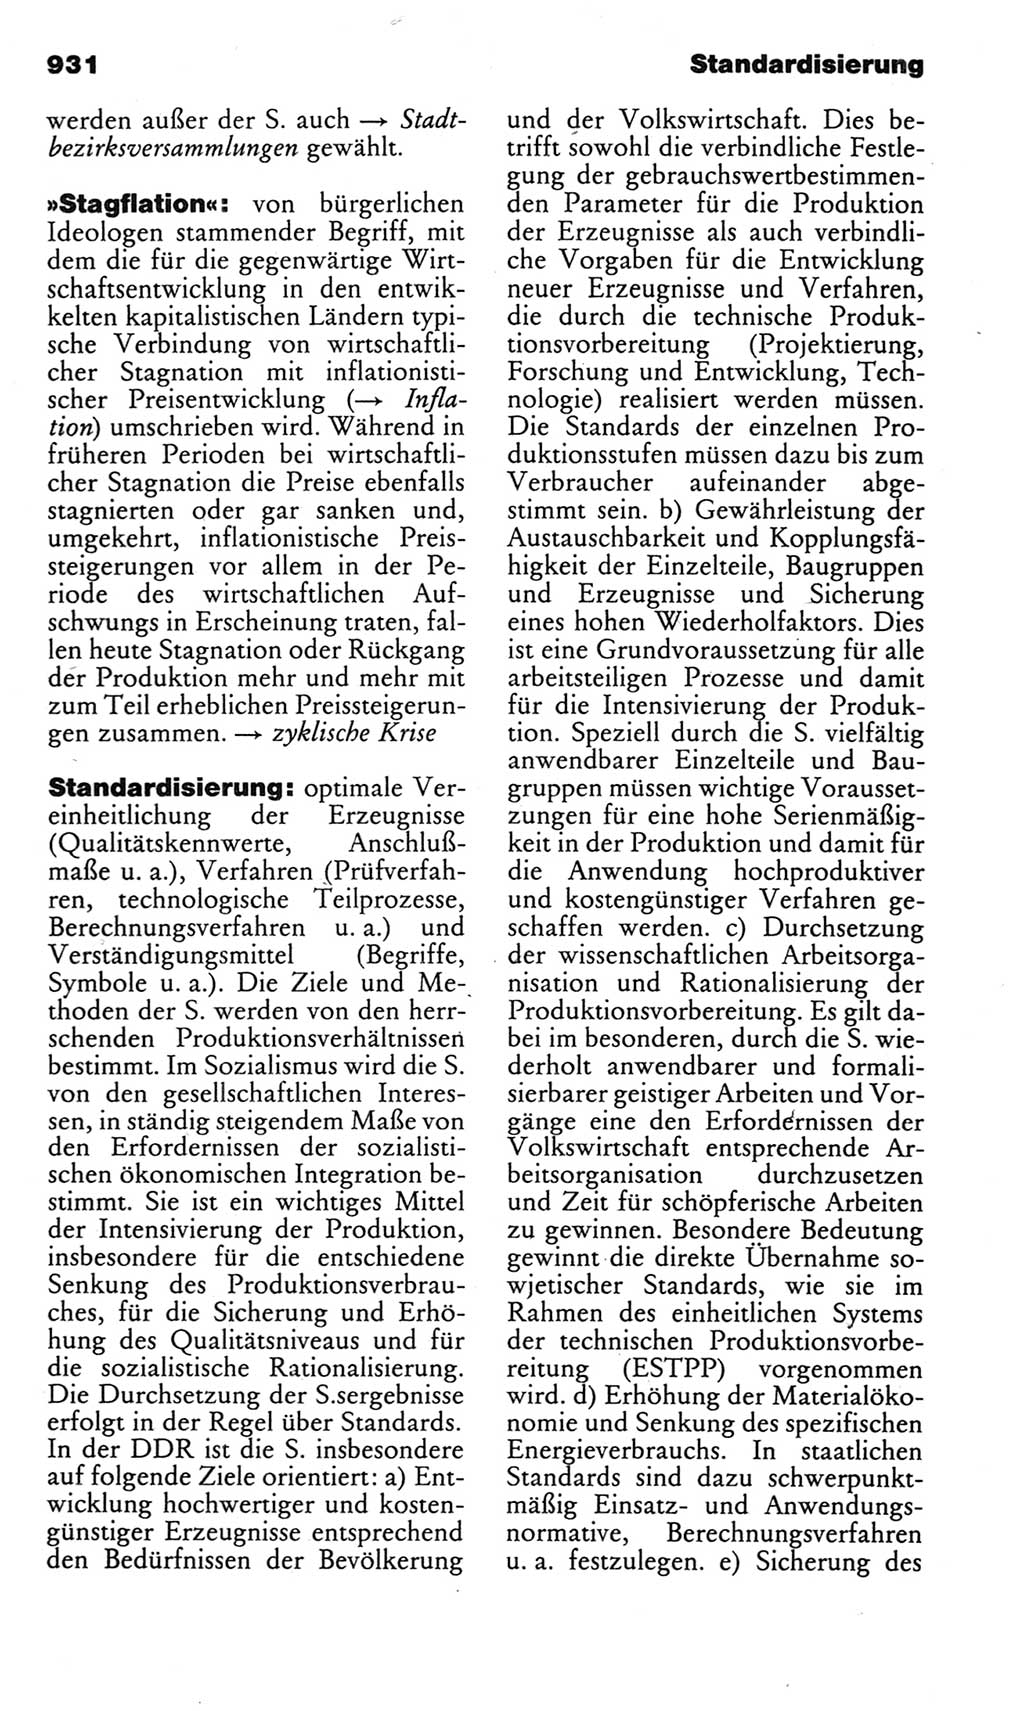 Kleines politisches Wörterbuch [Deutsche Demokratische Republik (DDR)] 1983, Seite 931 (Kl. pol. Wb. DDR 1983, S. 931)